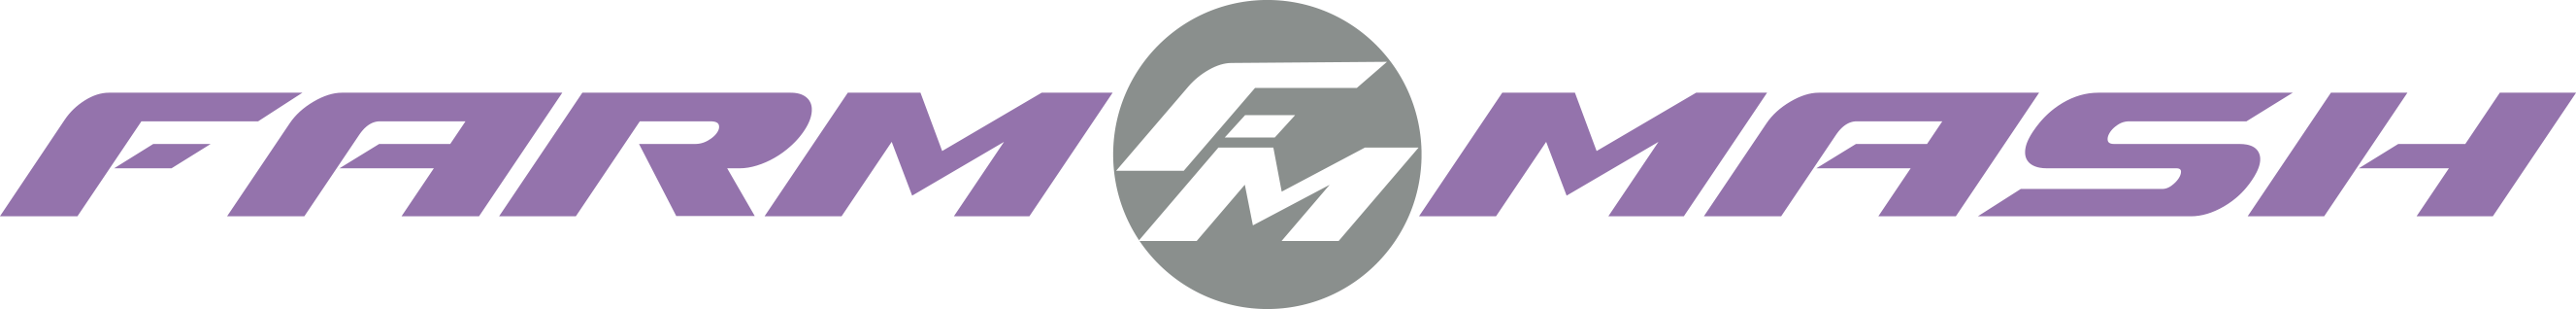 pharmmash_logo